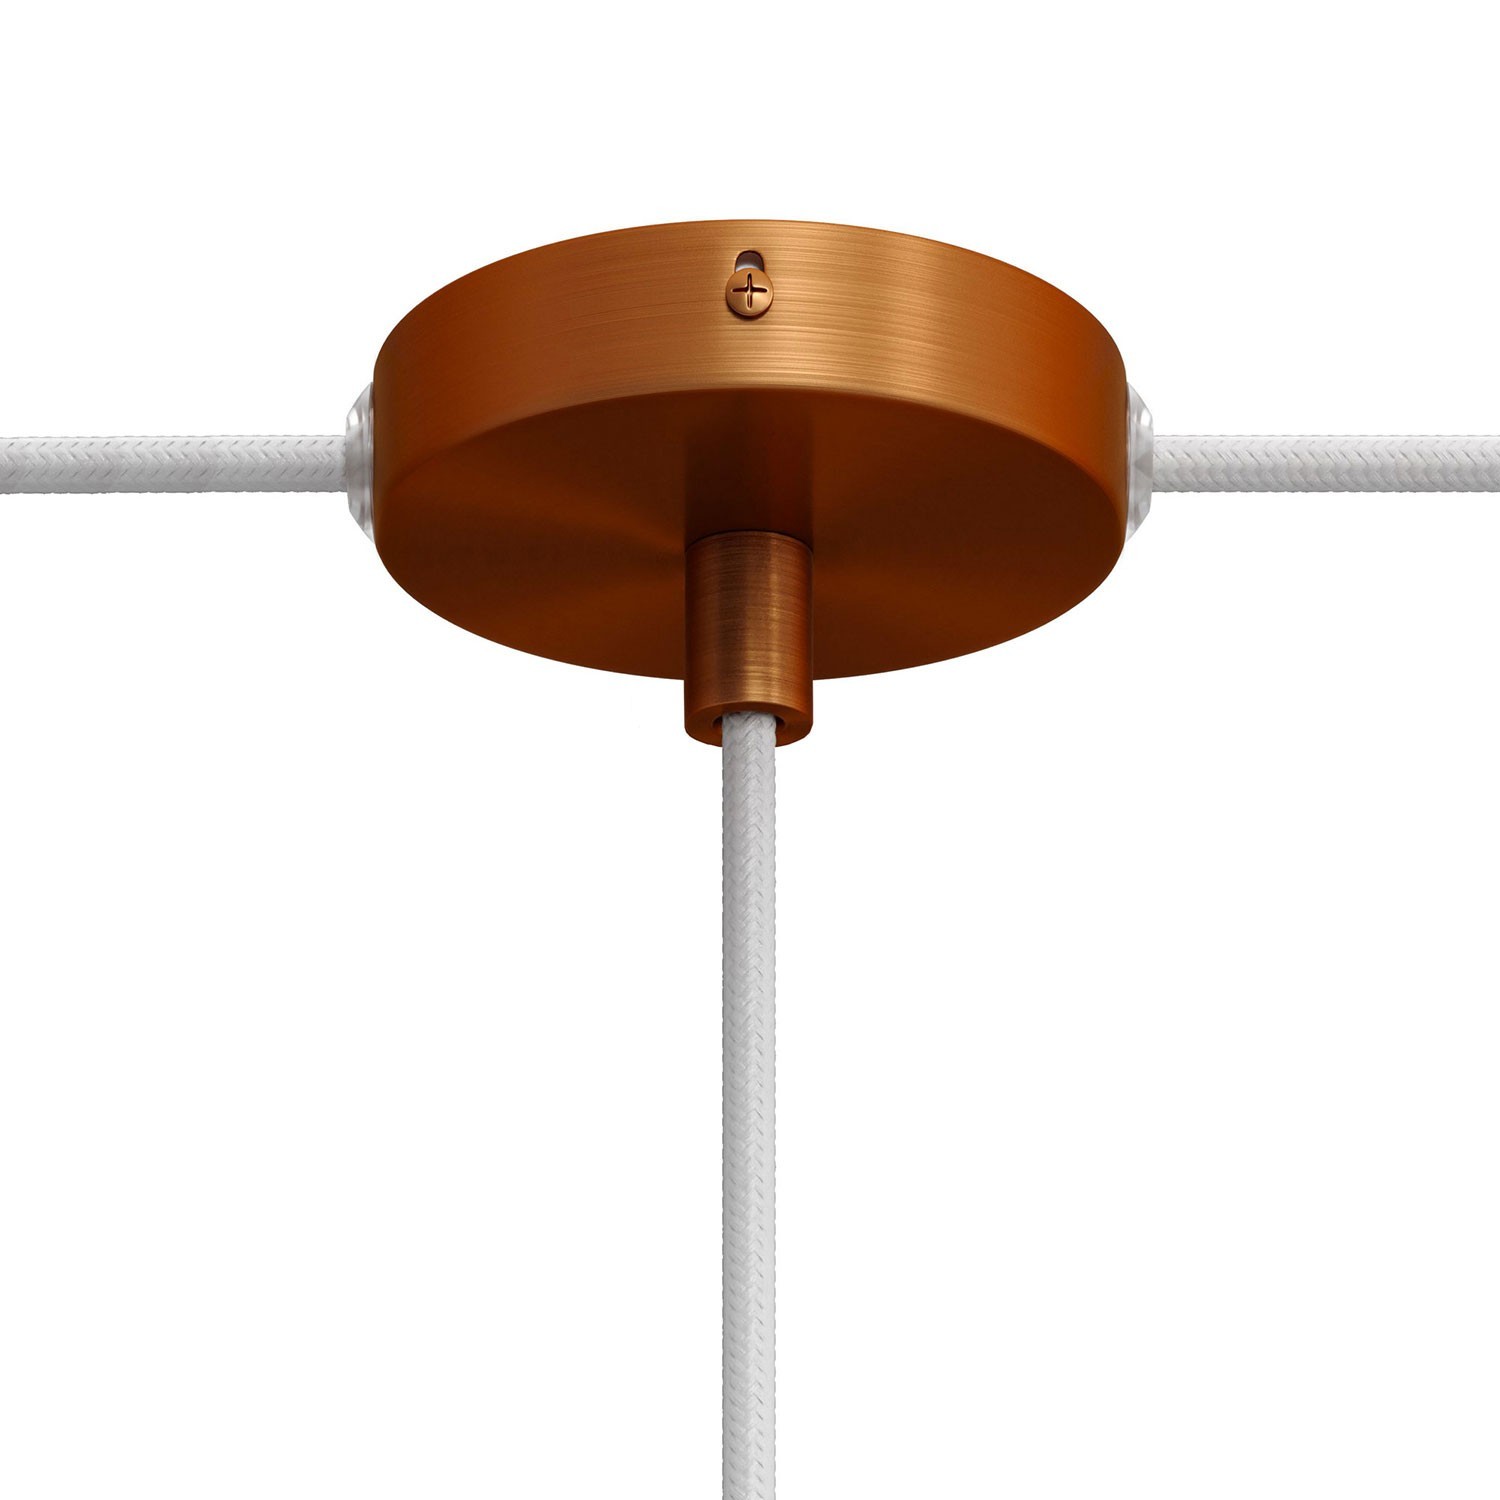 Kit Mini cylindrisk takkopp i metall med 1 centralt hål och 2 sidohål